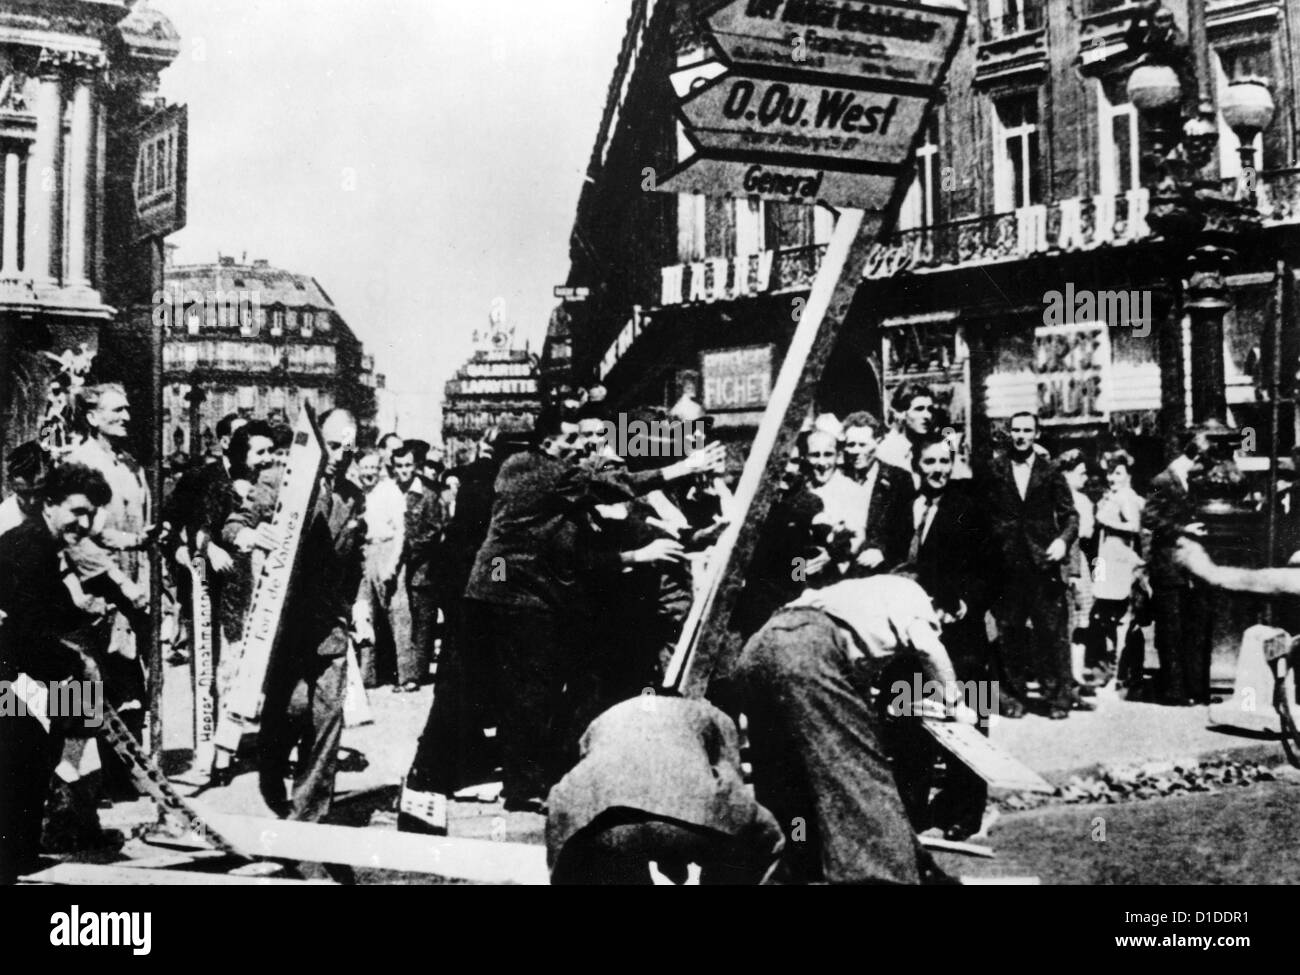 Unterstützt von den meisten Teilen der Bevölkerung zerstören französische Widerstandskämpfer im August 1944 deutsche Straßenschilder in Paris, Frankreich. Fotoarchiv für Zeitgeschichte Stockfoto